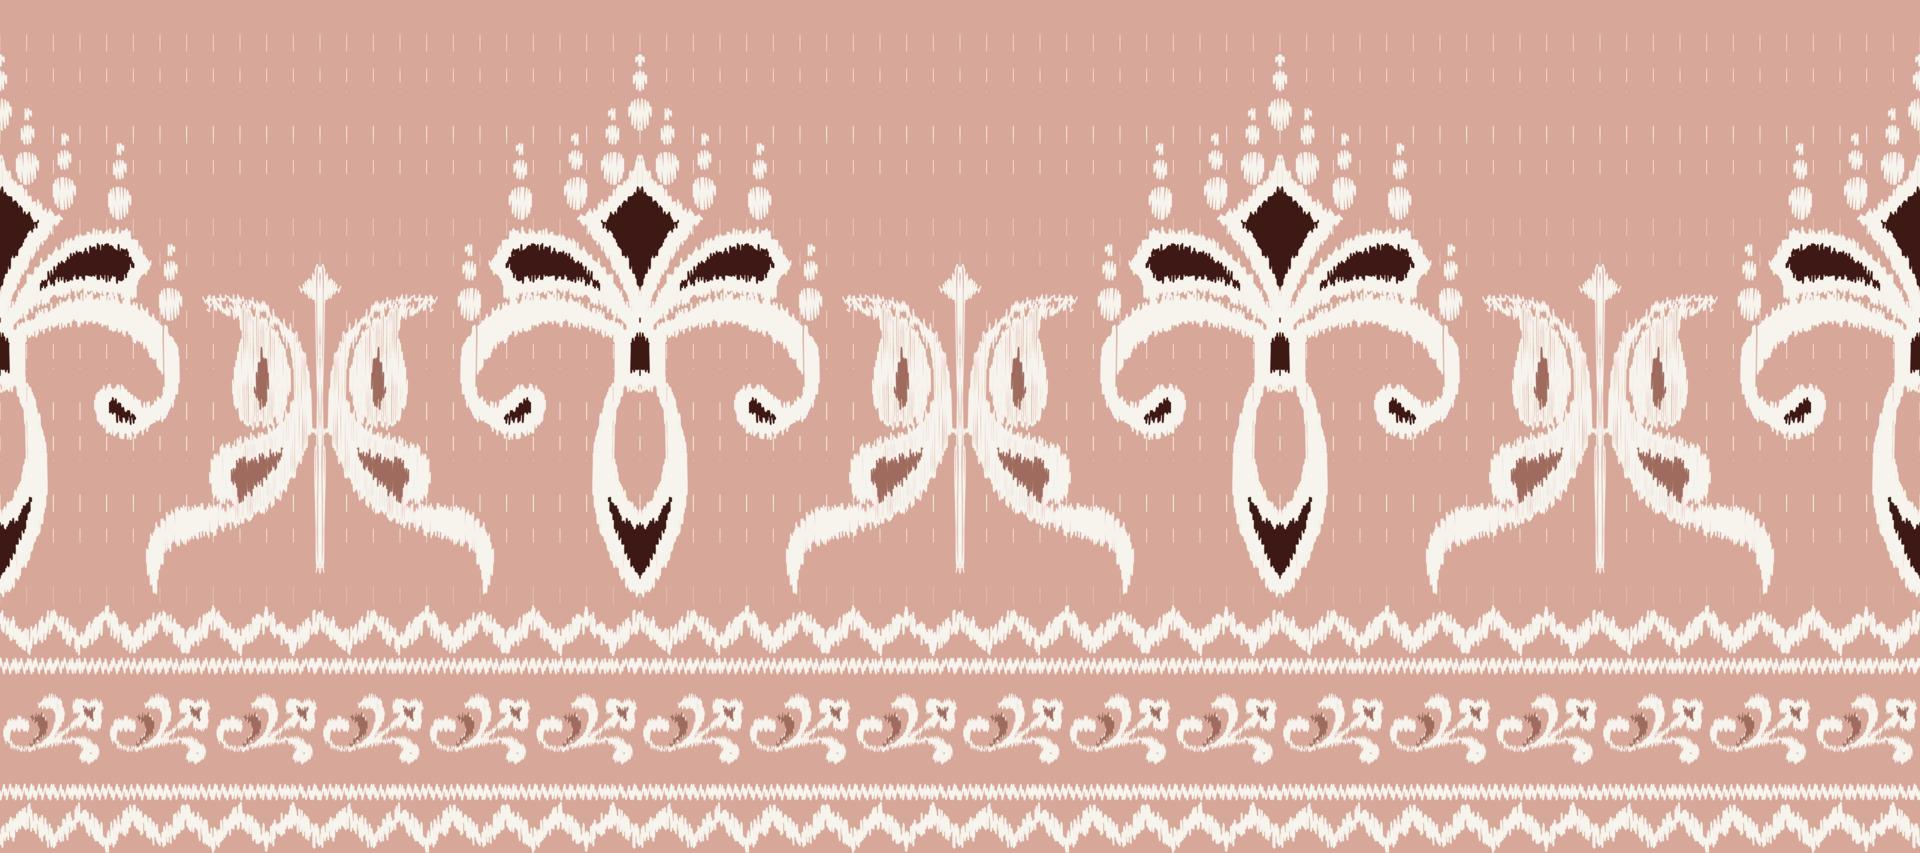 afrikansk ikat damast- paisley broderi bakgrund. geometrisk etnisk orientalisk mönster traditionell. ikat aztec stil abstrakt vektor illustration. design för skriva ut textur, tyg, saree, sari, matta.